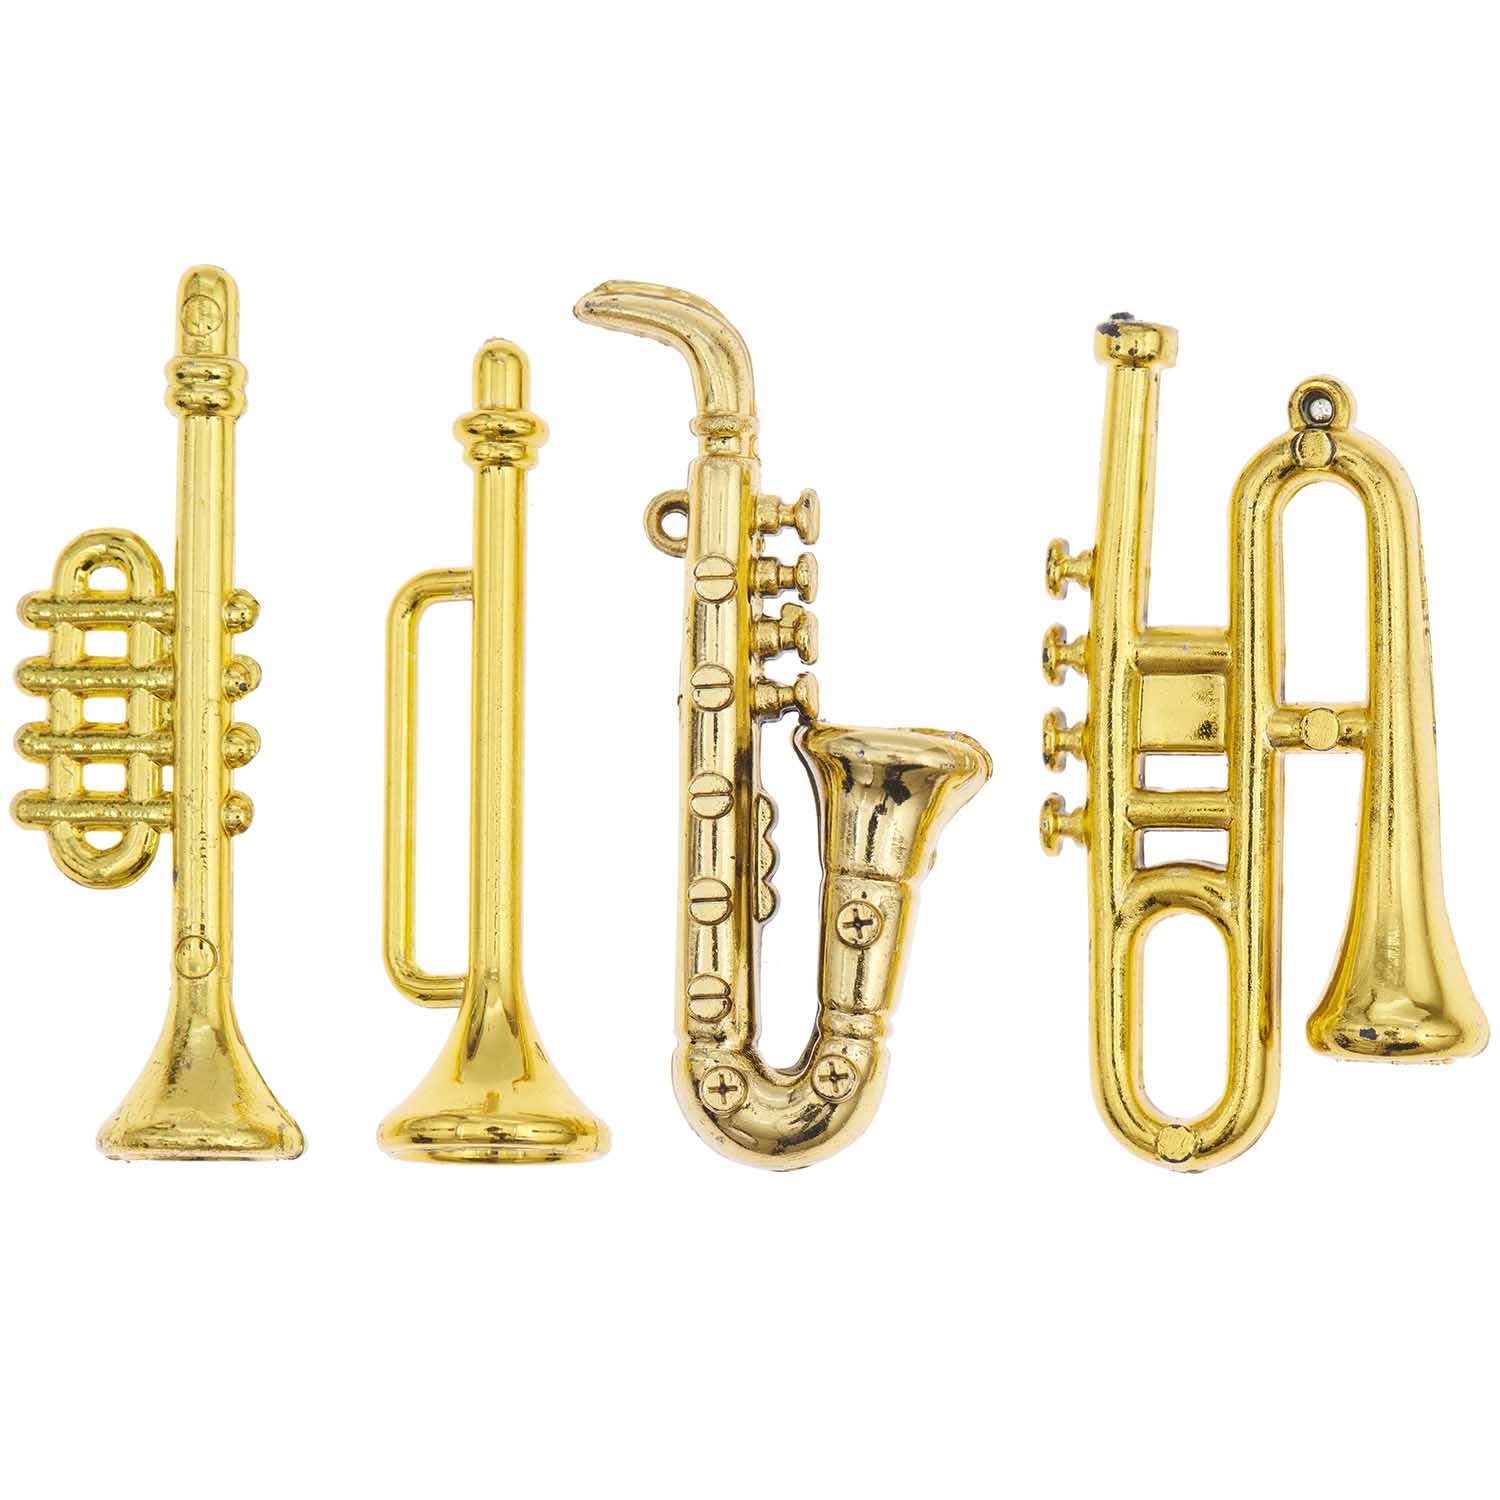 Trompette, saxophone etc lot de 4 instruments à vent miniatures